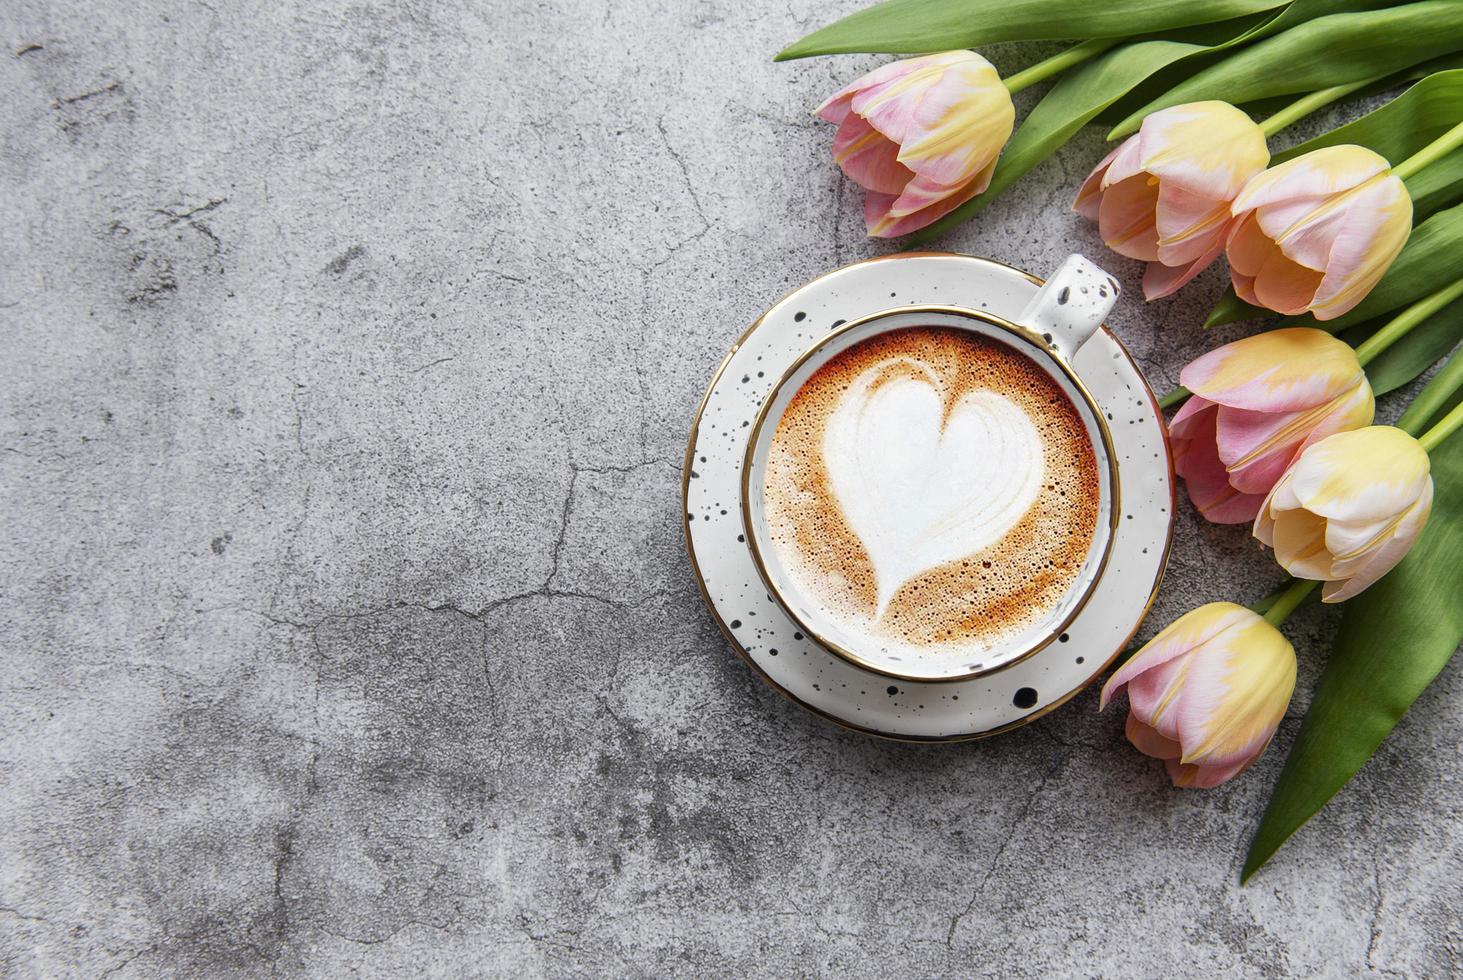 Frühlingstulpen und eine Tasse Kaffee foto